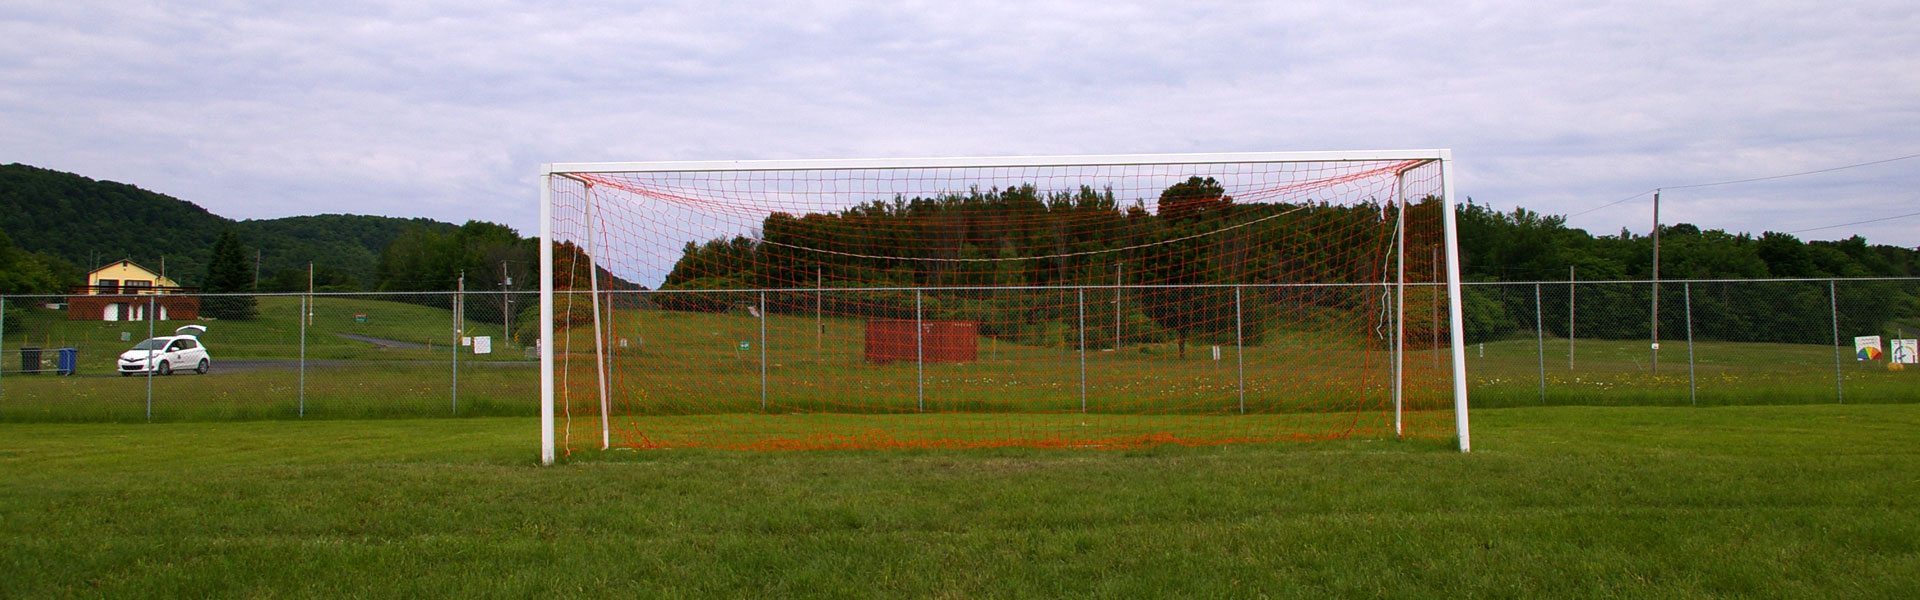 Photo du terrain de soccer au site du ministère de la Défense nationale